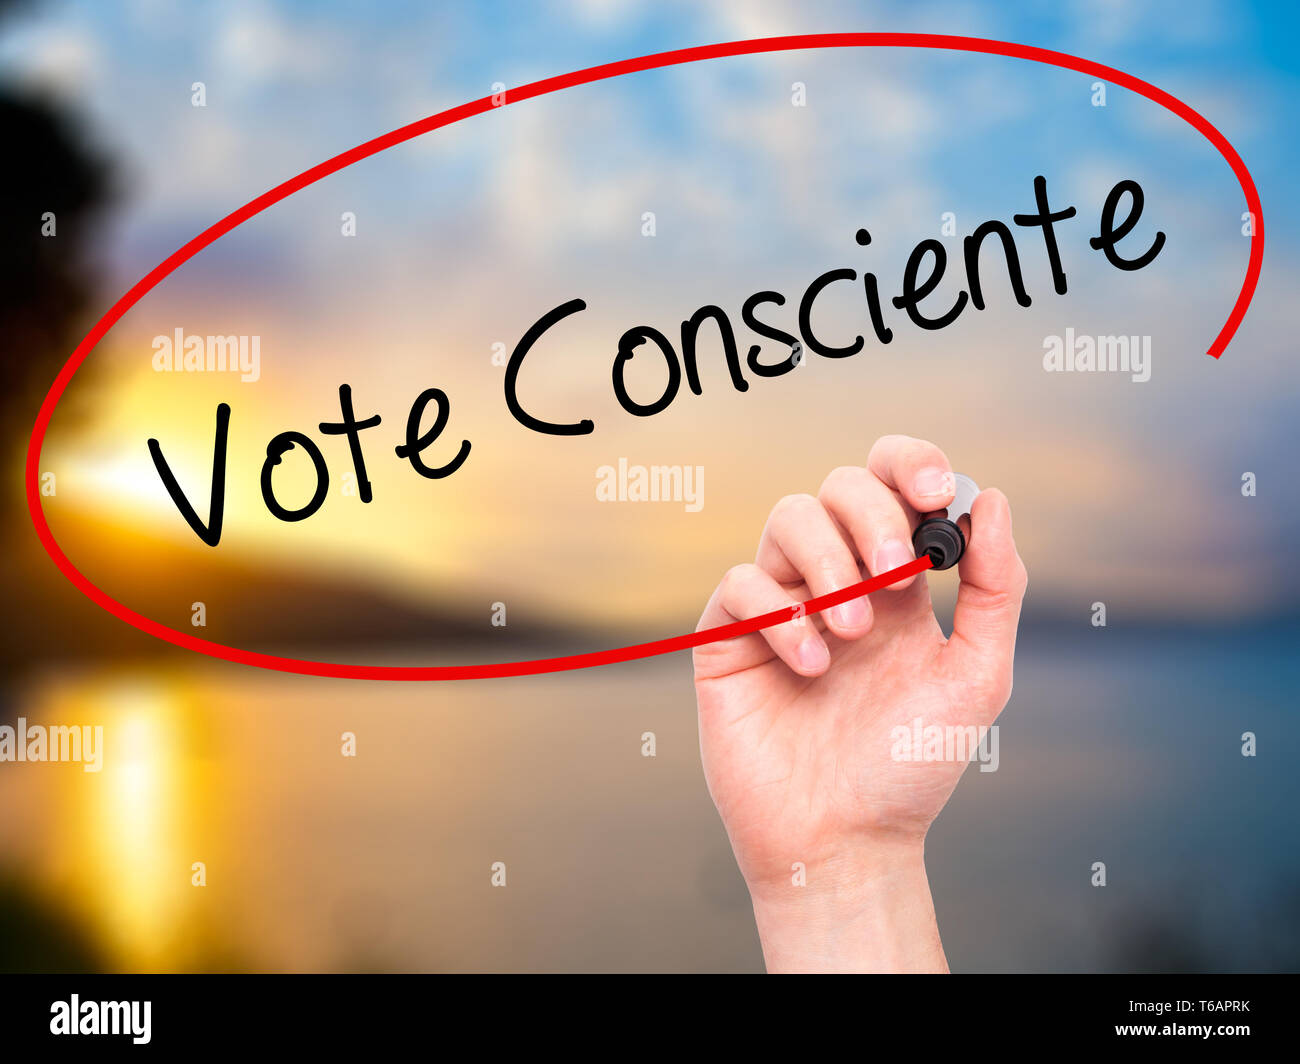 Man mano che scrive voto Consciente (votazione coscienziosamente in portoghese) con pennarello nero su schermo visivo Foto Stock